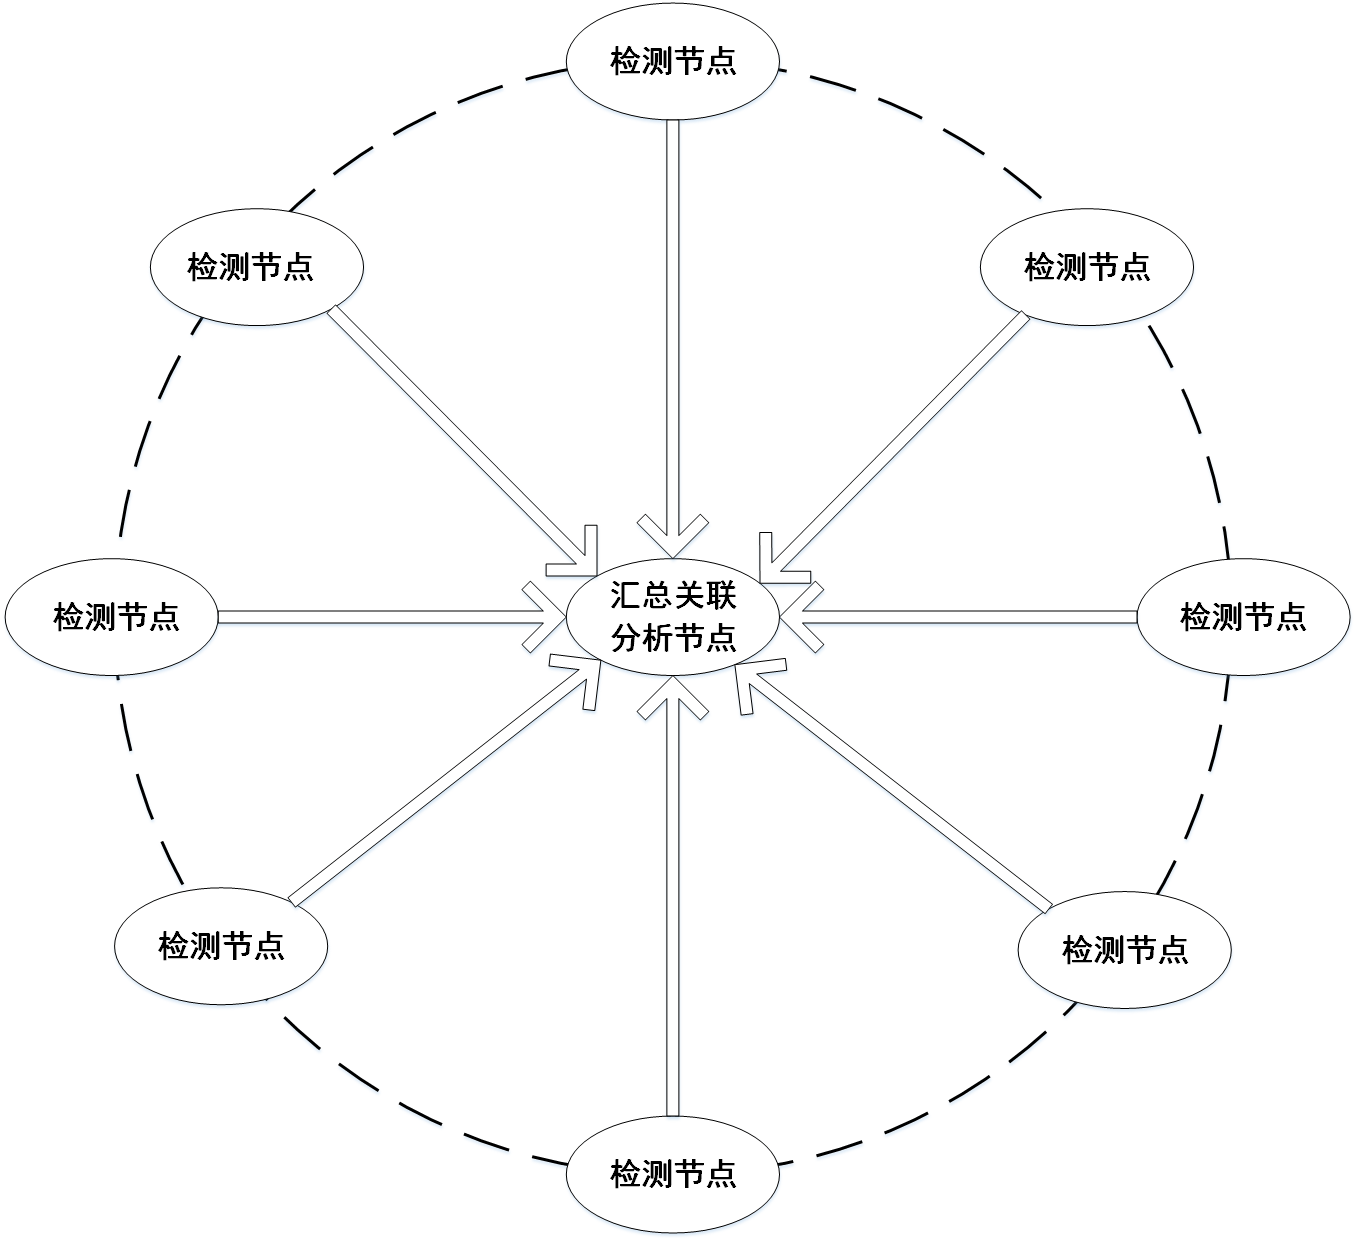 图 9-6 集中式结构